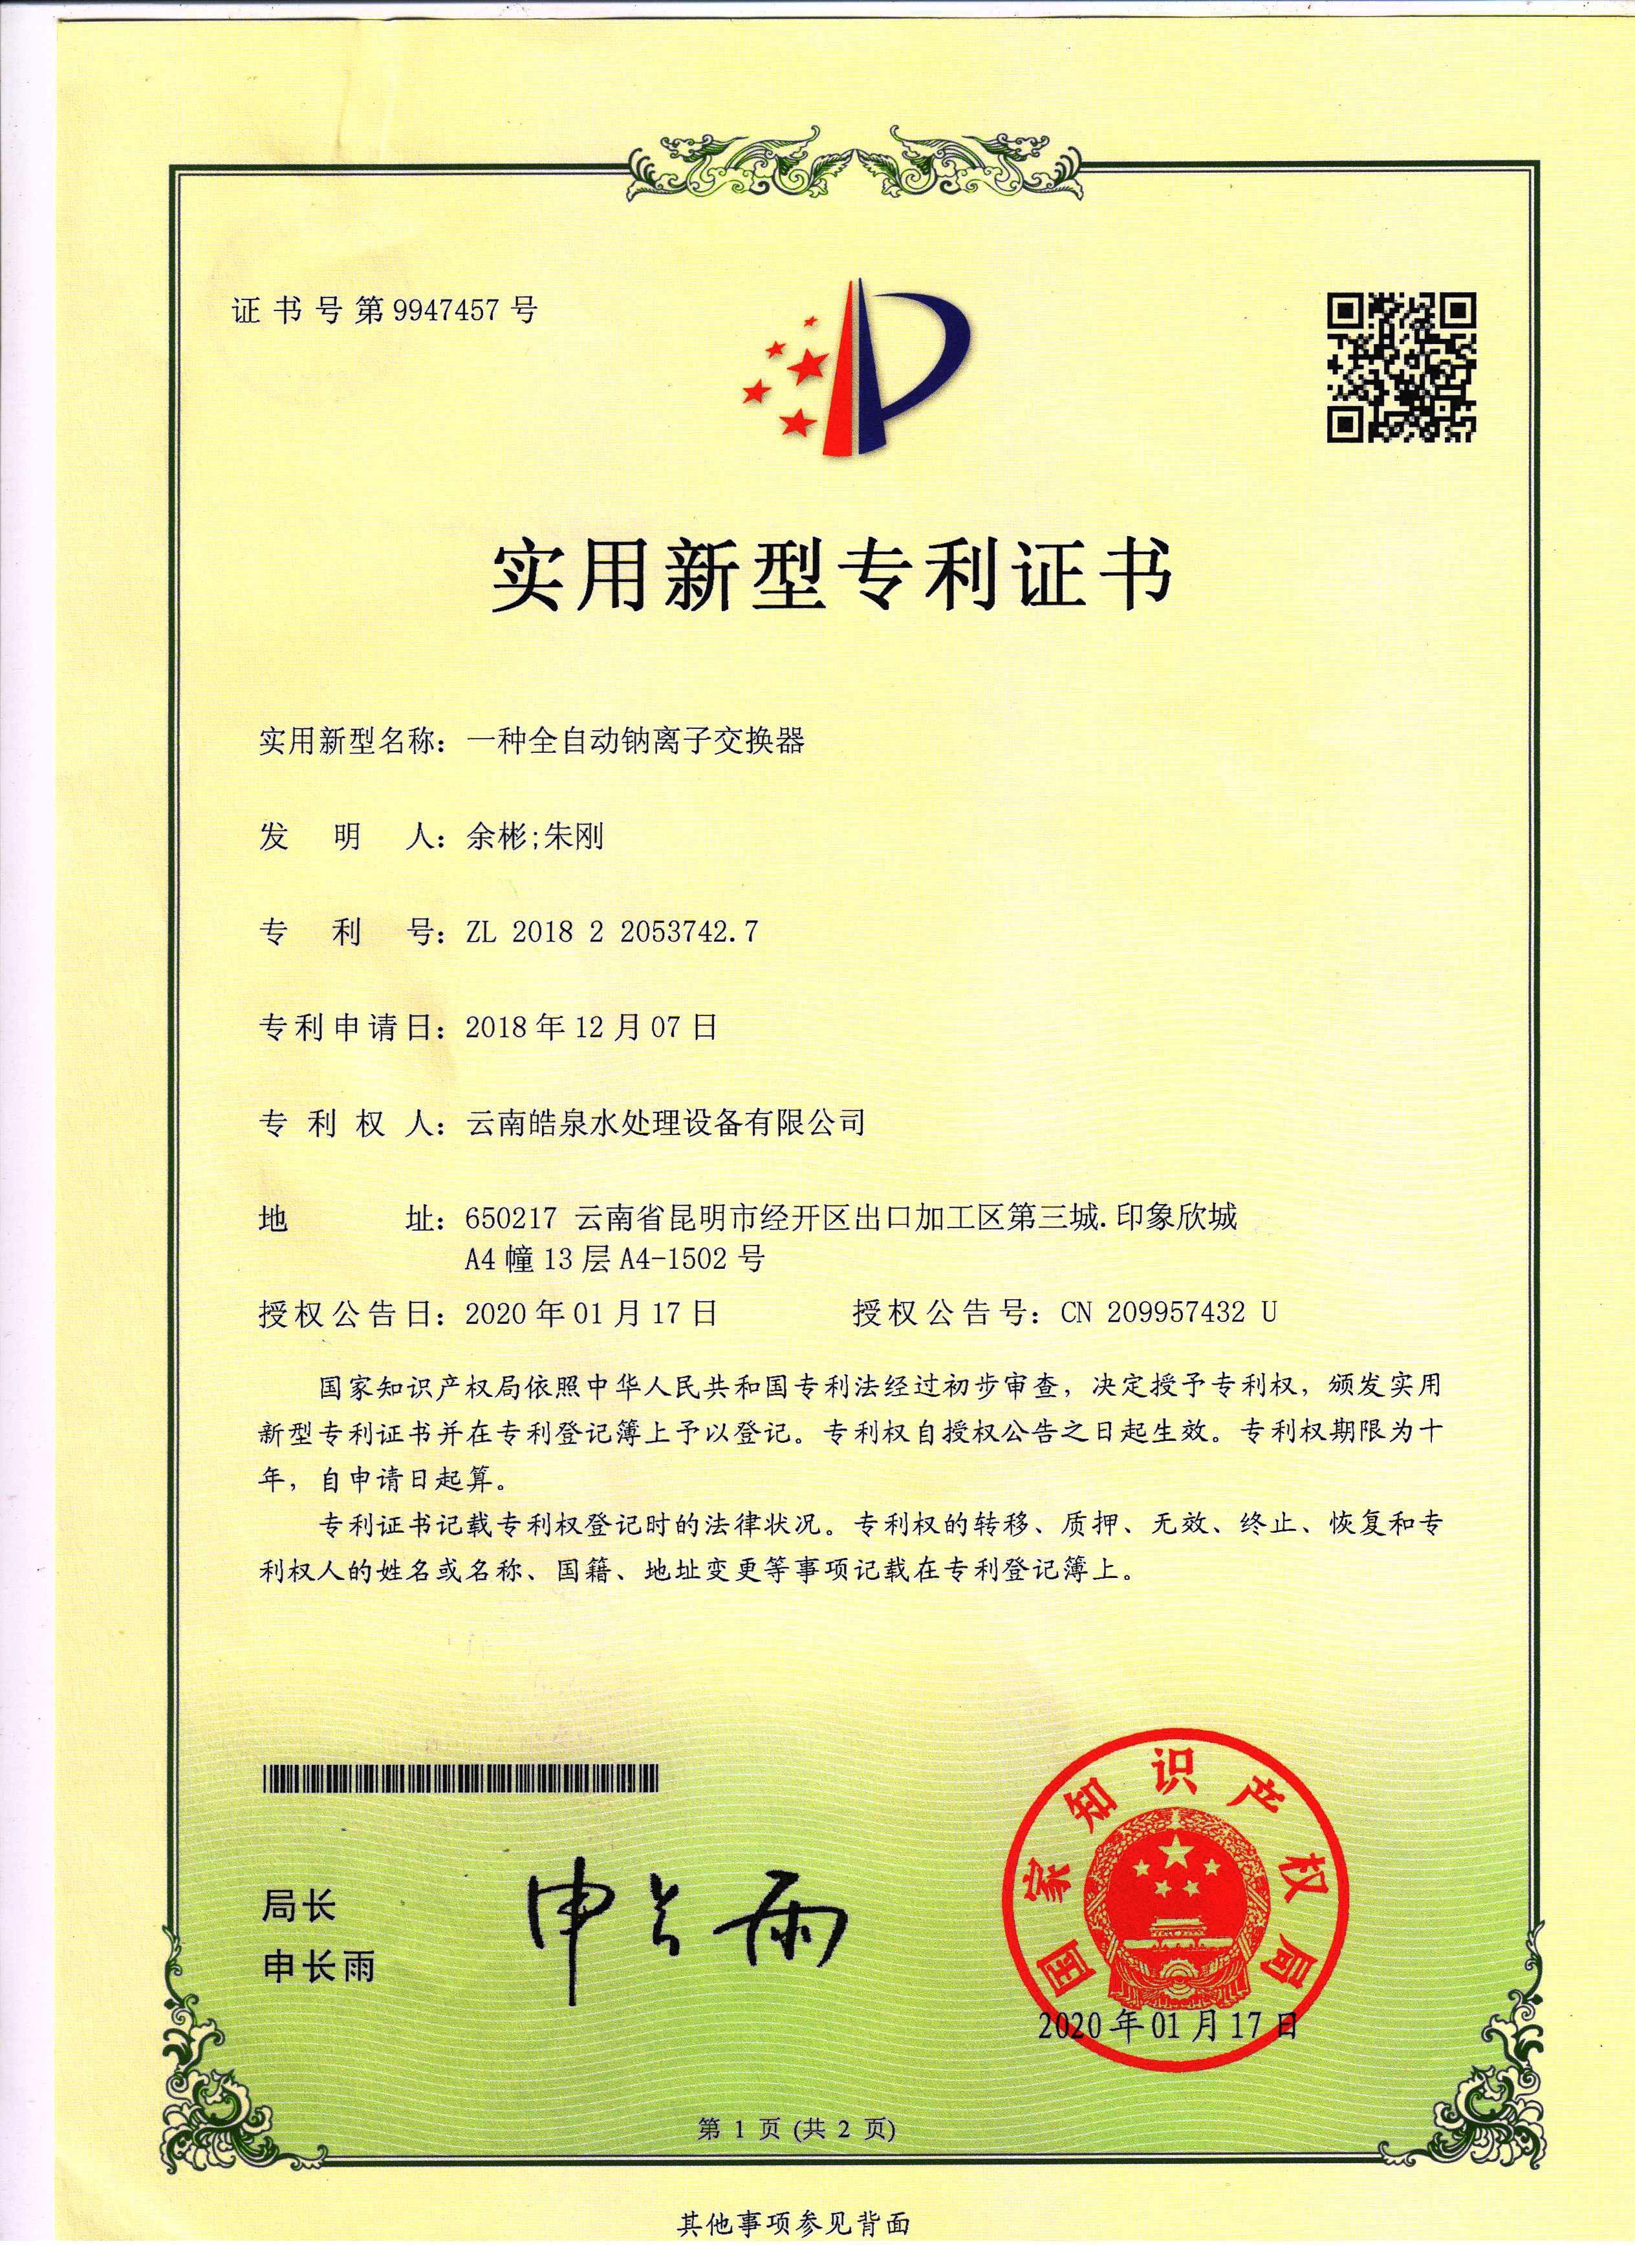 自动钠离子交换器专利技术证